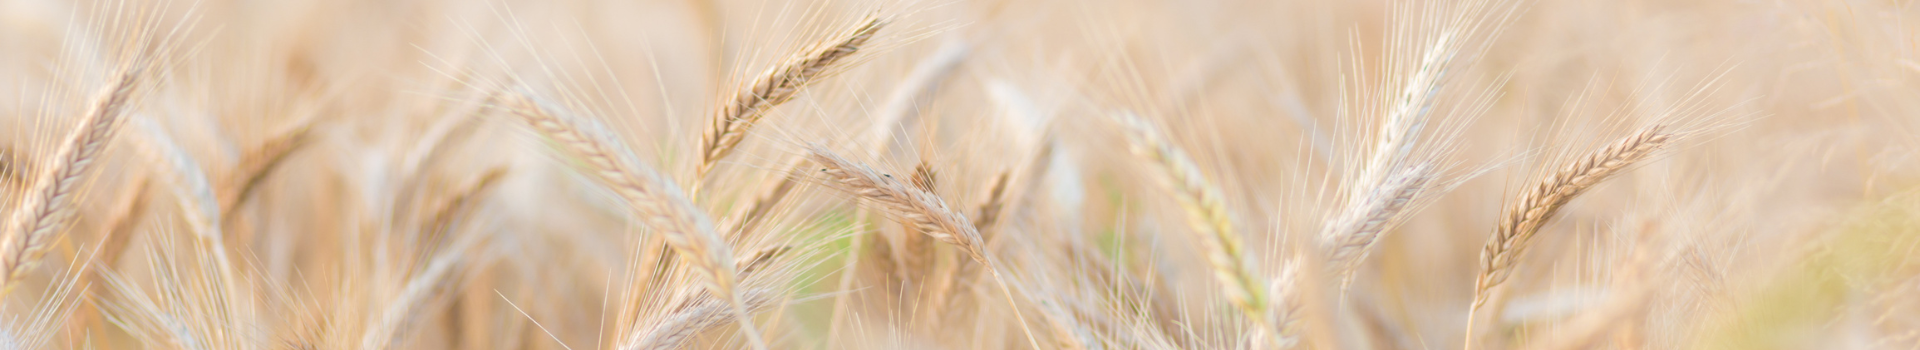 Hastalık Modelleri - Buğday